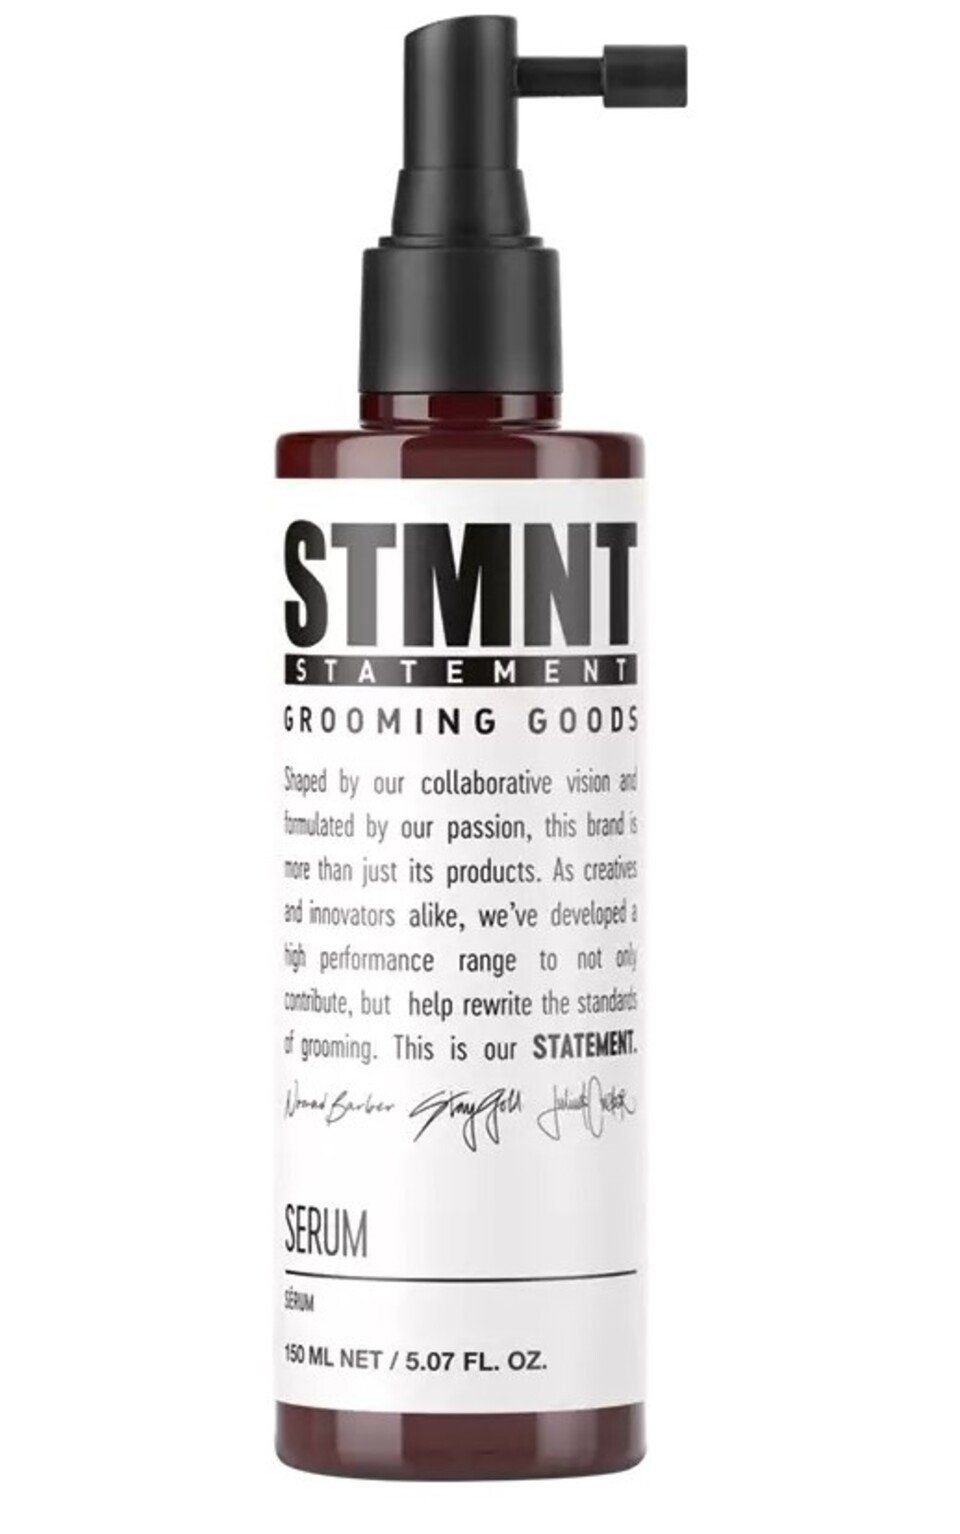 Schwarzkopf Haarserum STMNT Serum 150 ml, 1-tlg., pflegt intensiv, Feuchtigkeitsausgleichend | Haarseren